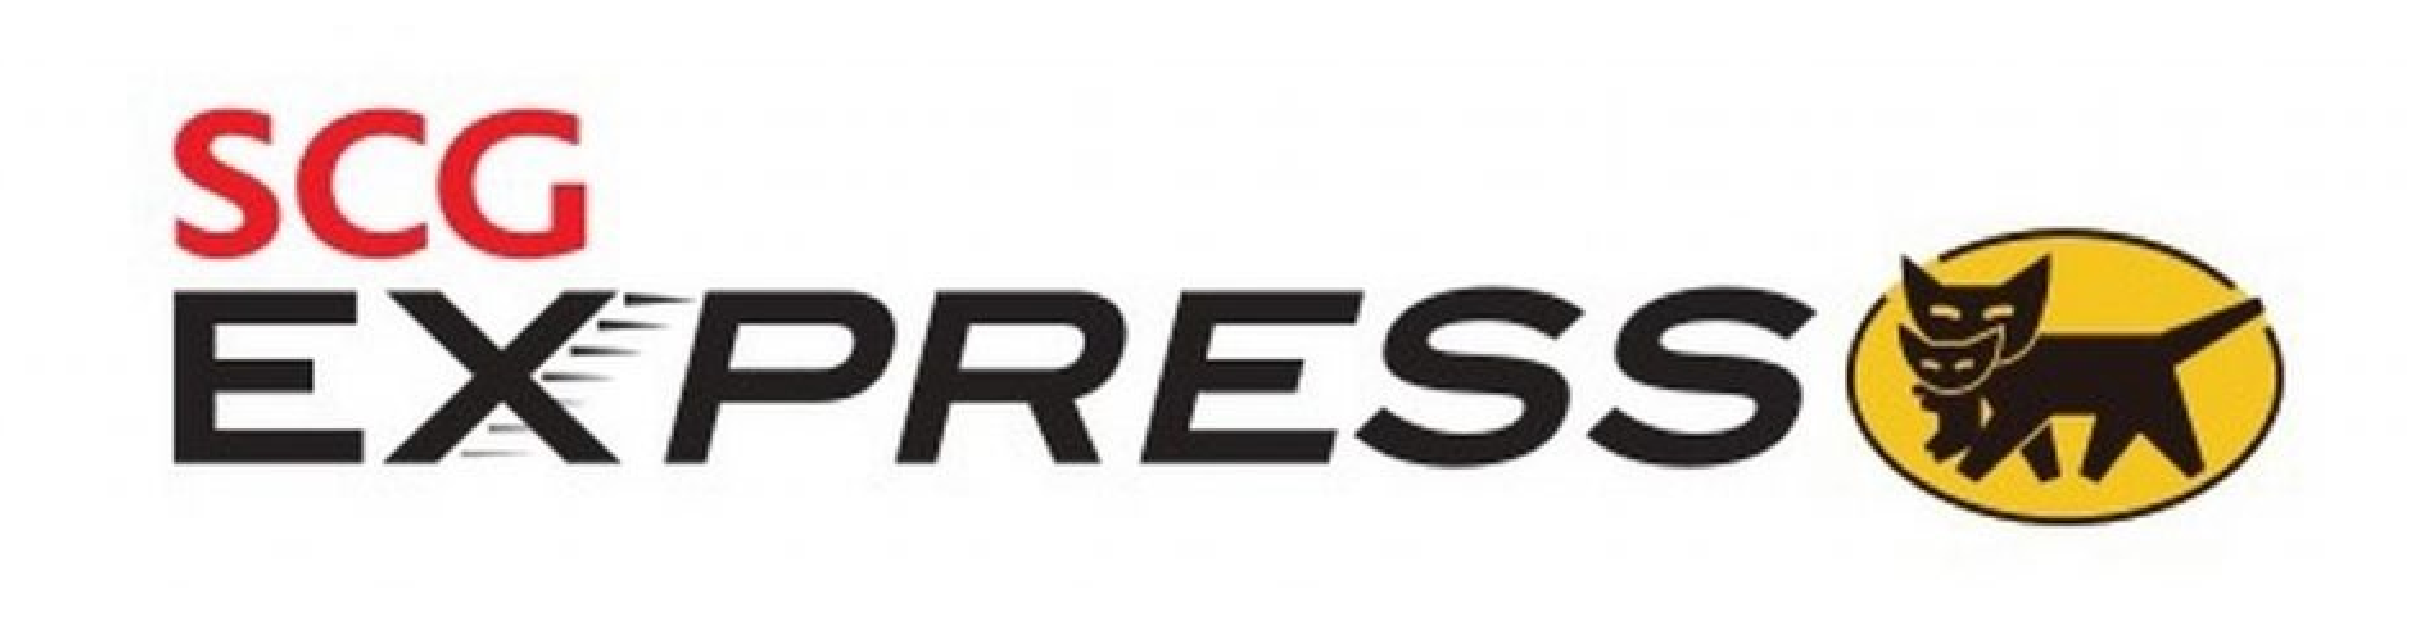 Volt express ru. Express. Экспресс лого. Express надпись. Экспресс деталь логотип.